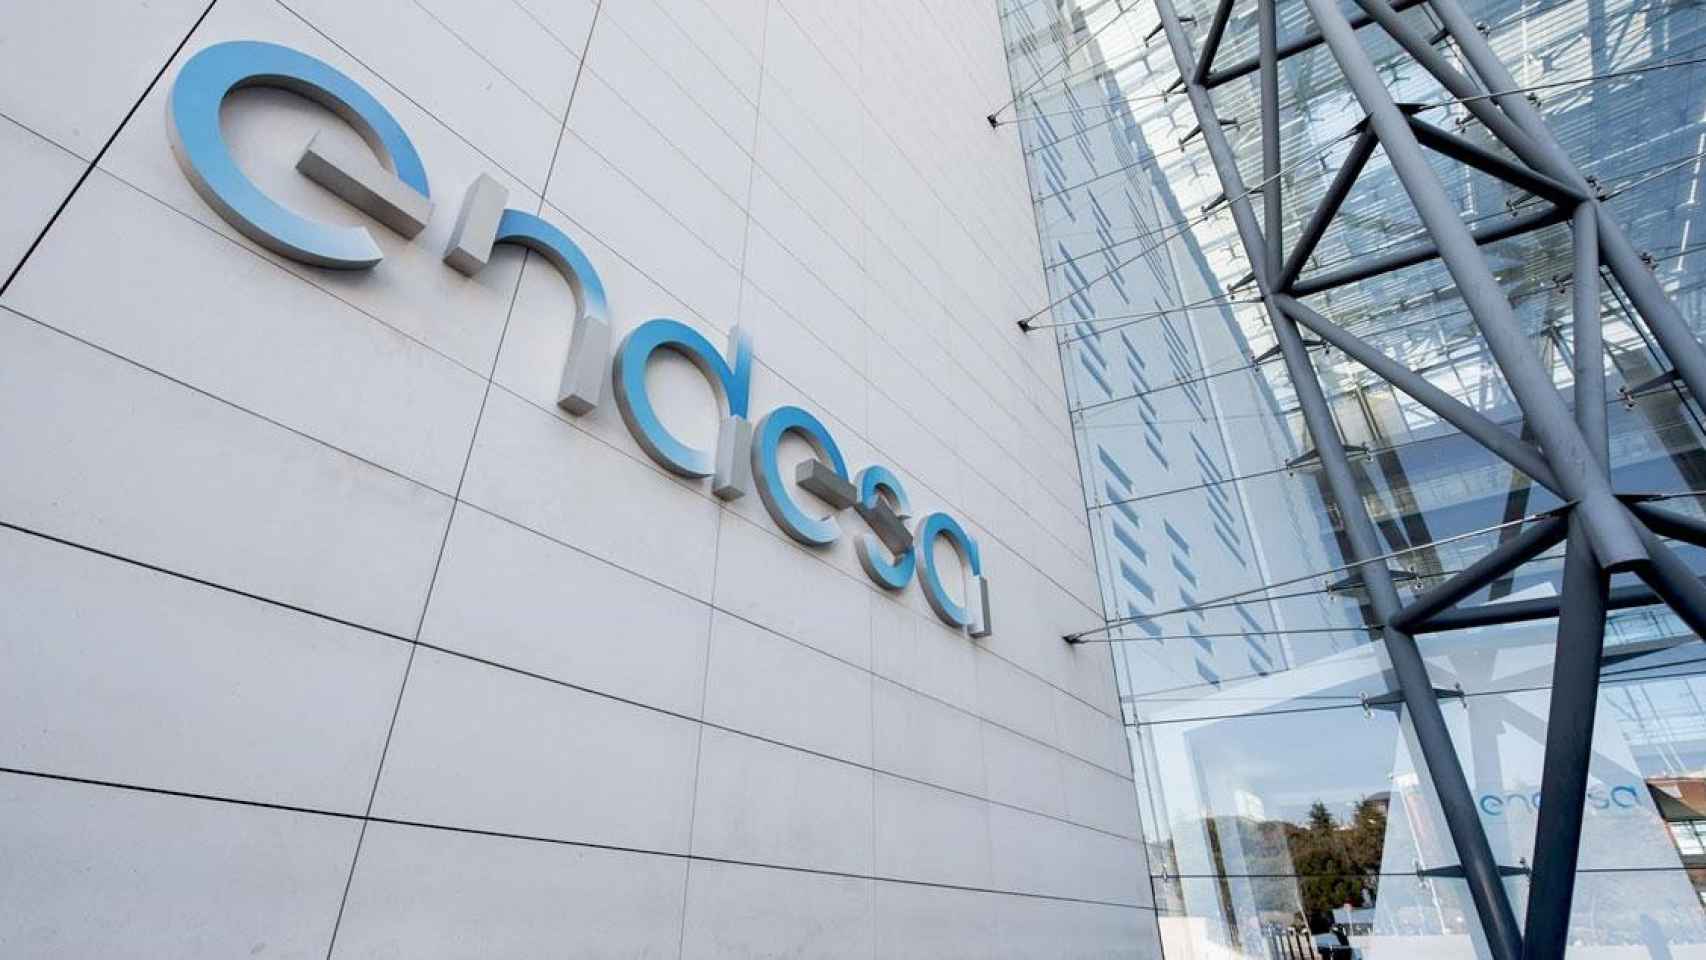 La sede de Endesa, la energética que ha desbloqueado su convenio colectivo tras 26 meses / EFE